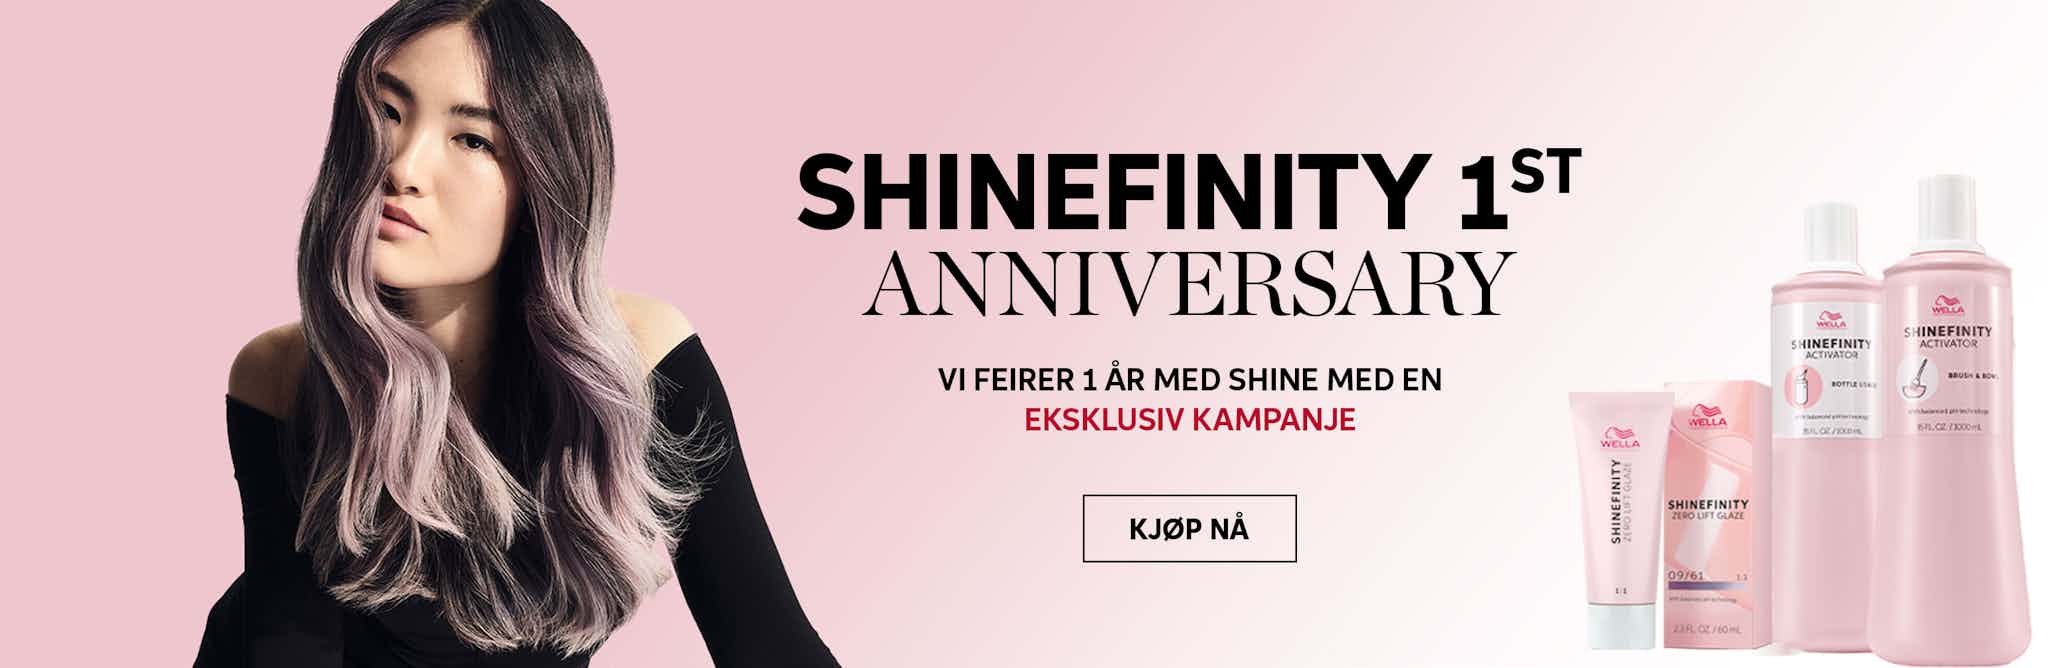 Shinefinity 1st Anniversary